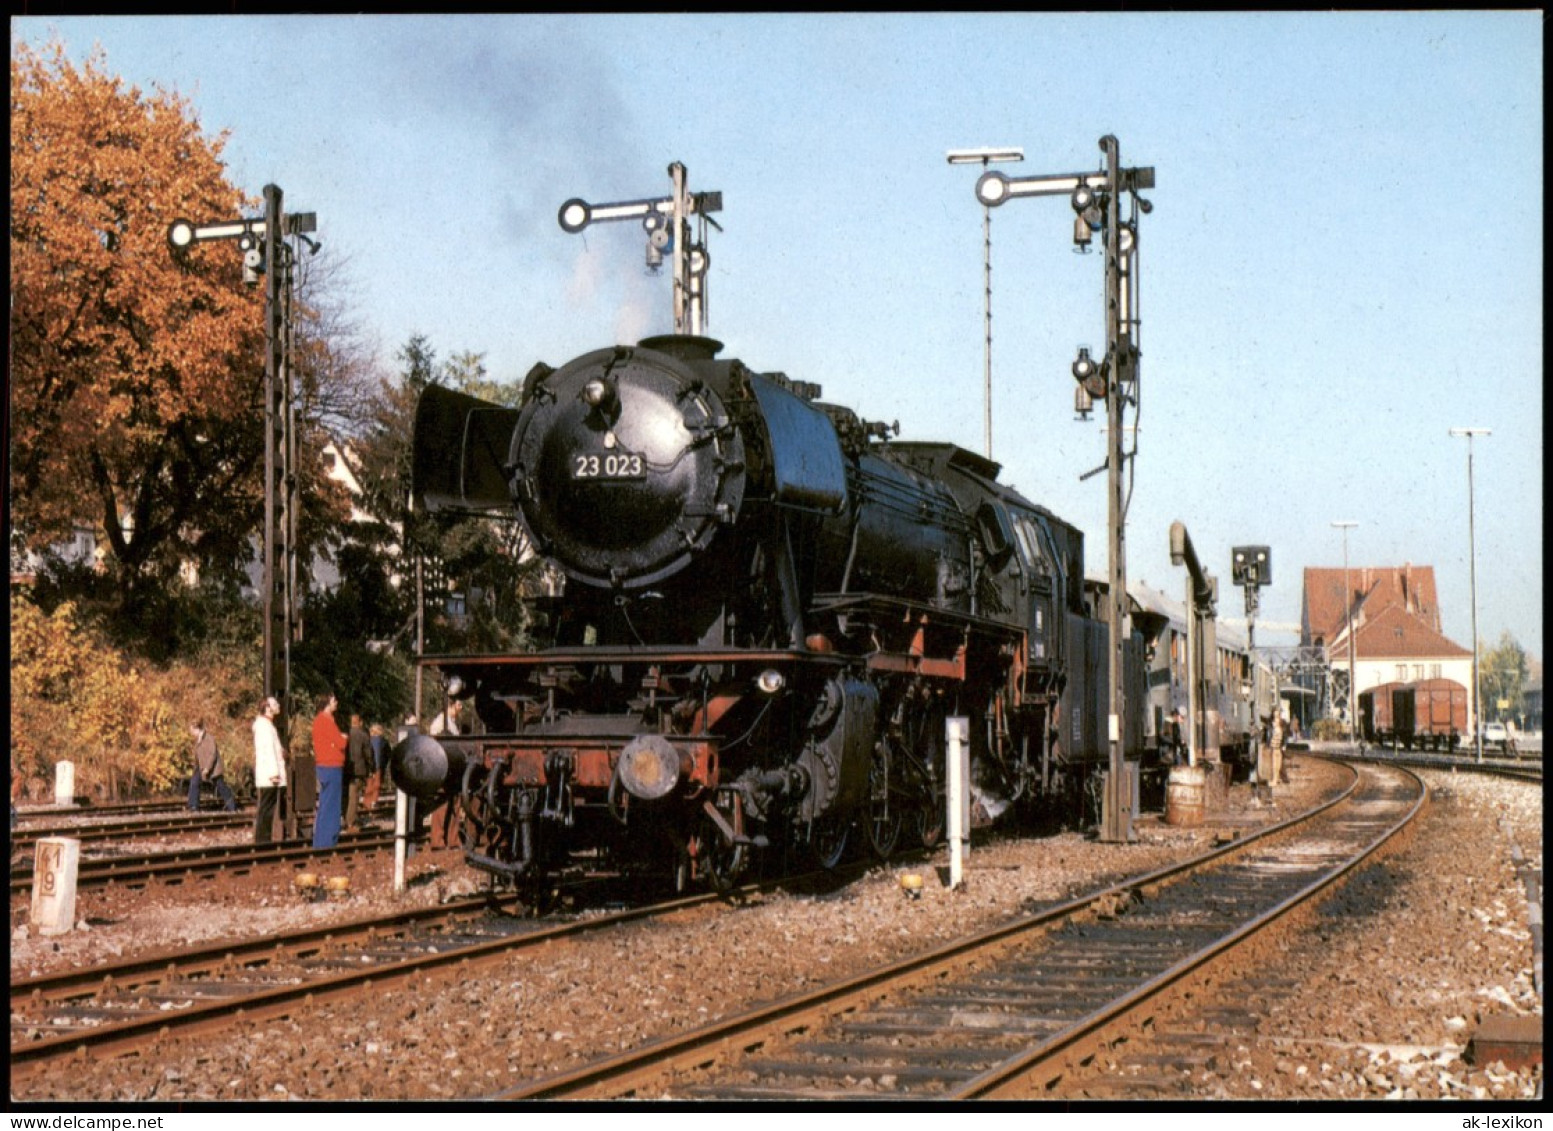 Historische Dampflokomotive Personenzug-Dampflok Baureihe 23 023 Der DB 1980 - Treinen